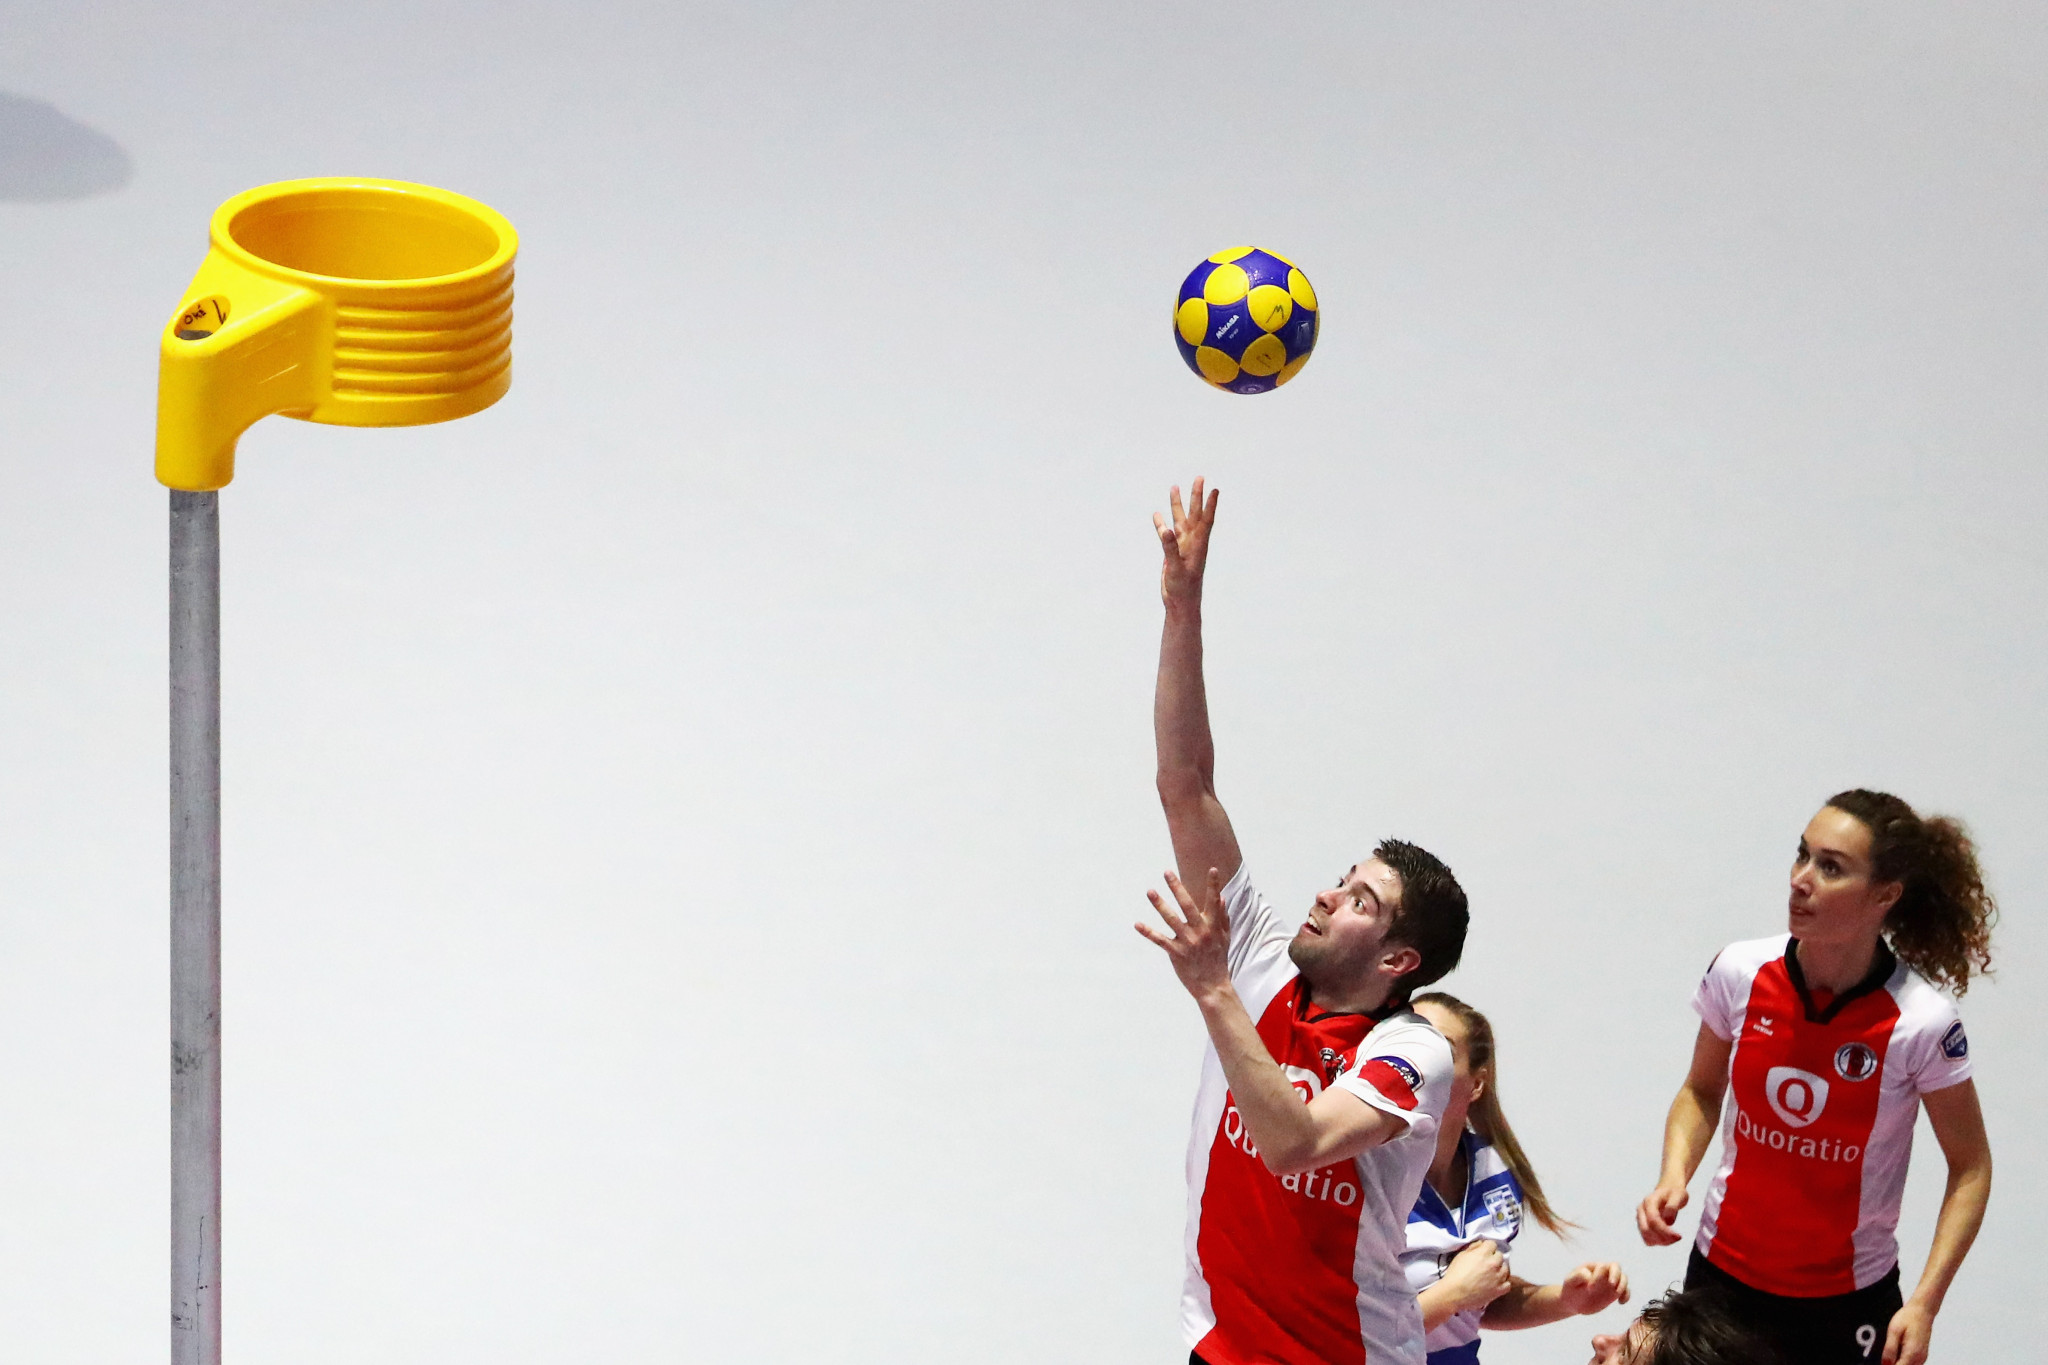 Le korfball est un sport d'équipe mixte © Getty Images